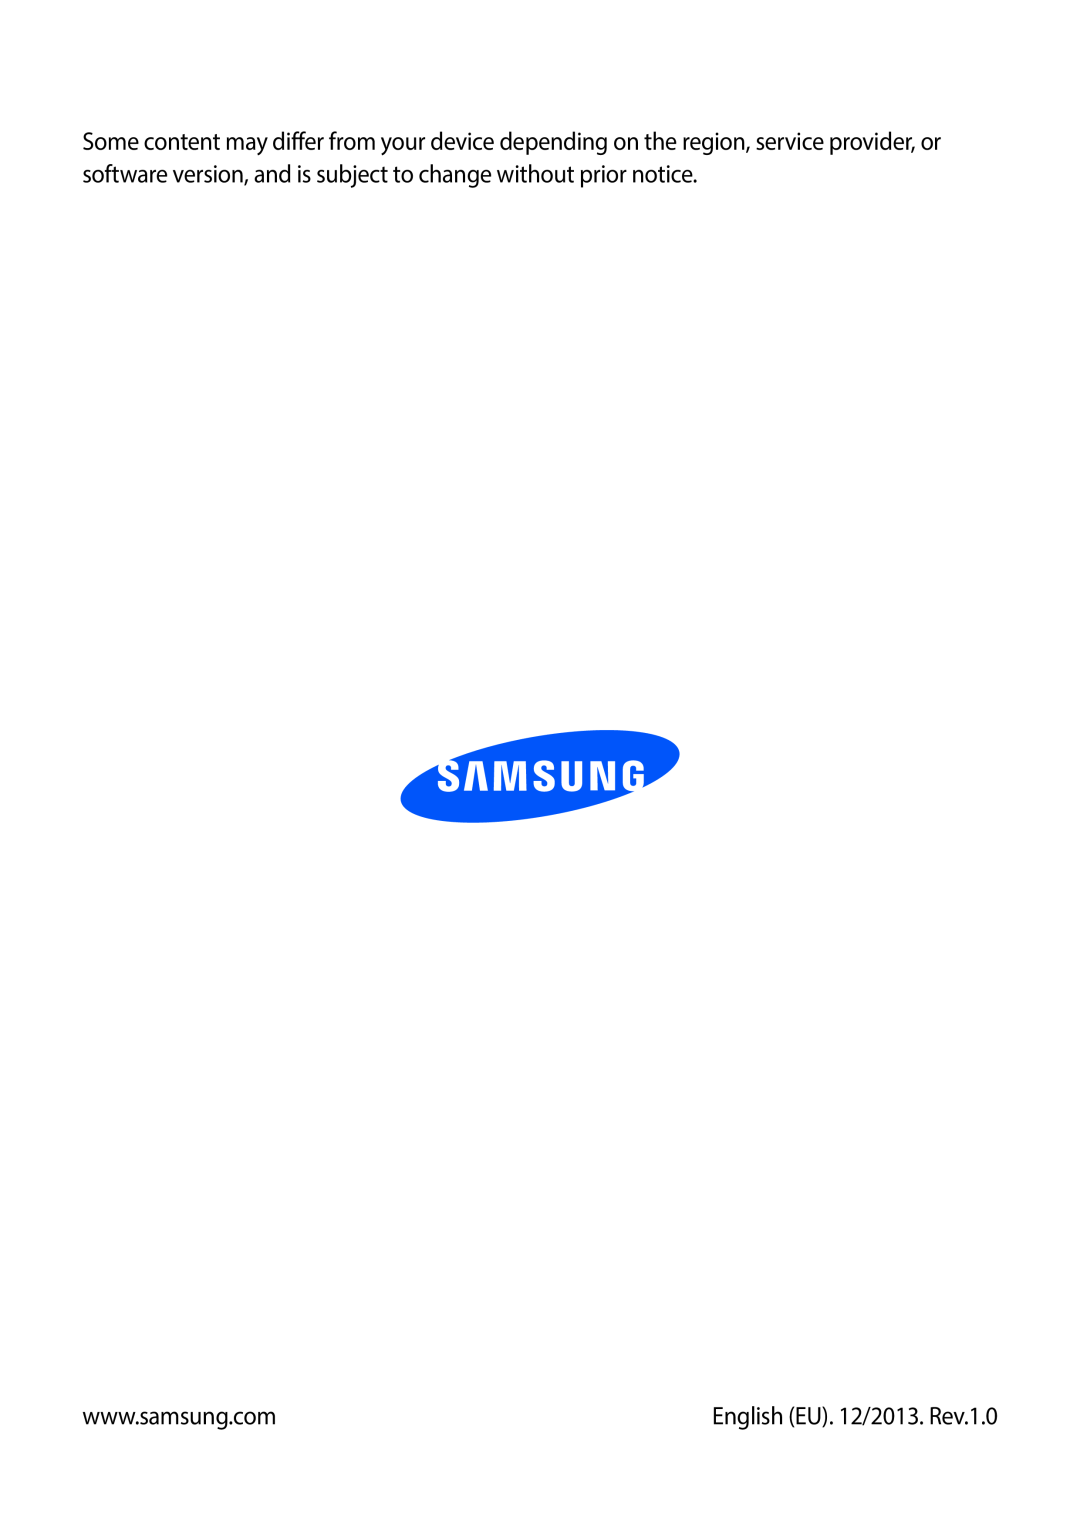 Samsung SM-G7105ZKADBT, SM-G7105ZKAATO, SM-G7105ZWAATO, SM-G7105ZKATUR, SM-G7105ZWATUR manual English EU. 12/2013. Rev.1.0 